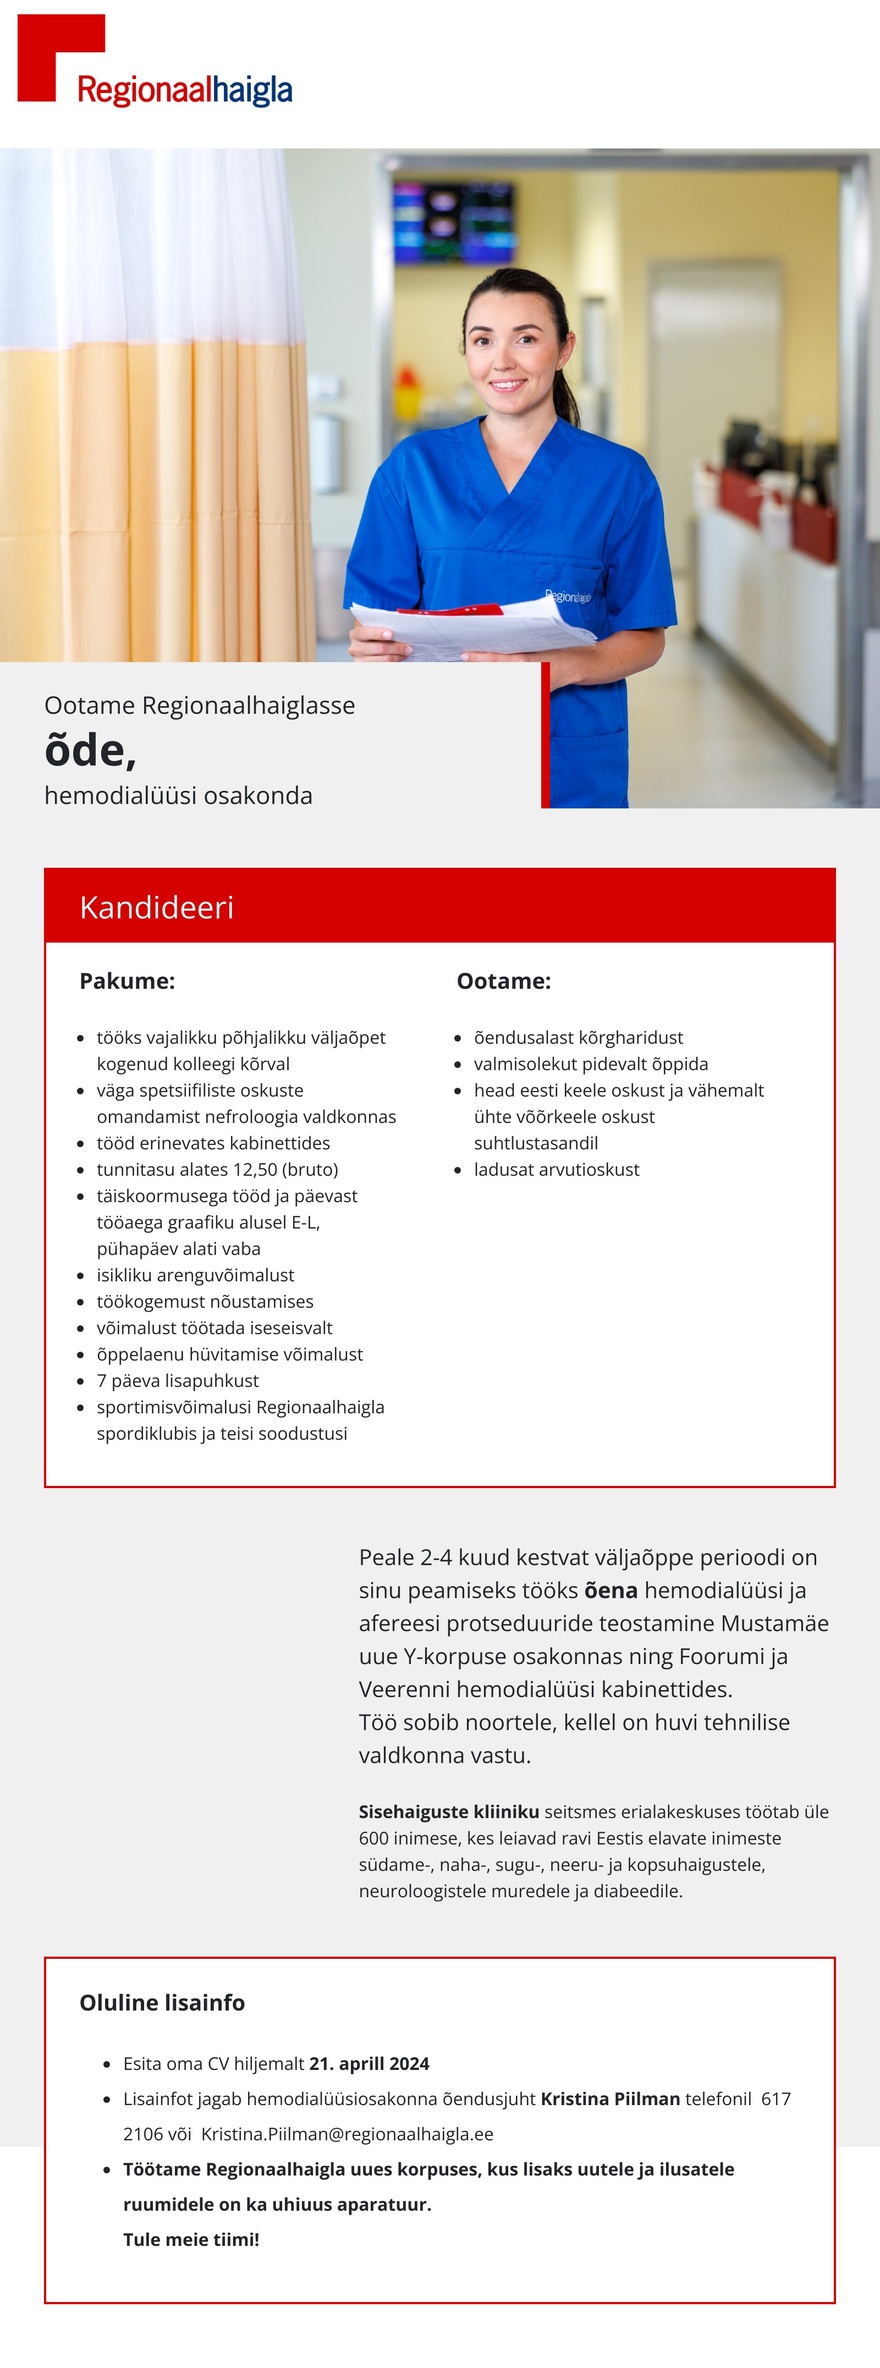 Põhja-Eesti Regionaalhaigla Õde hemodialüüsi osakonda